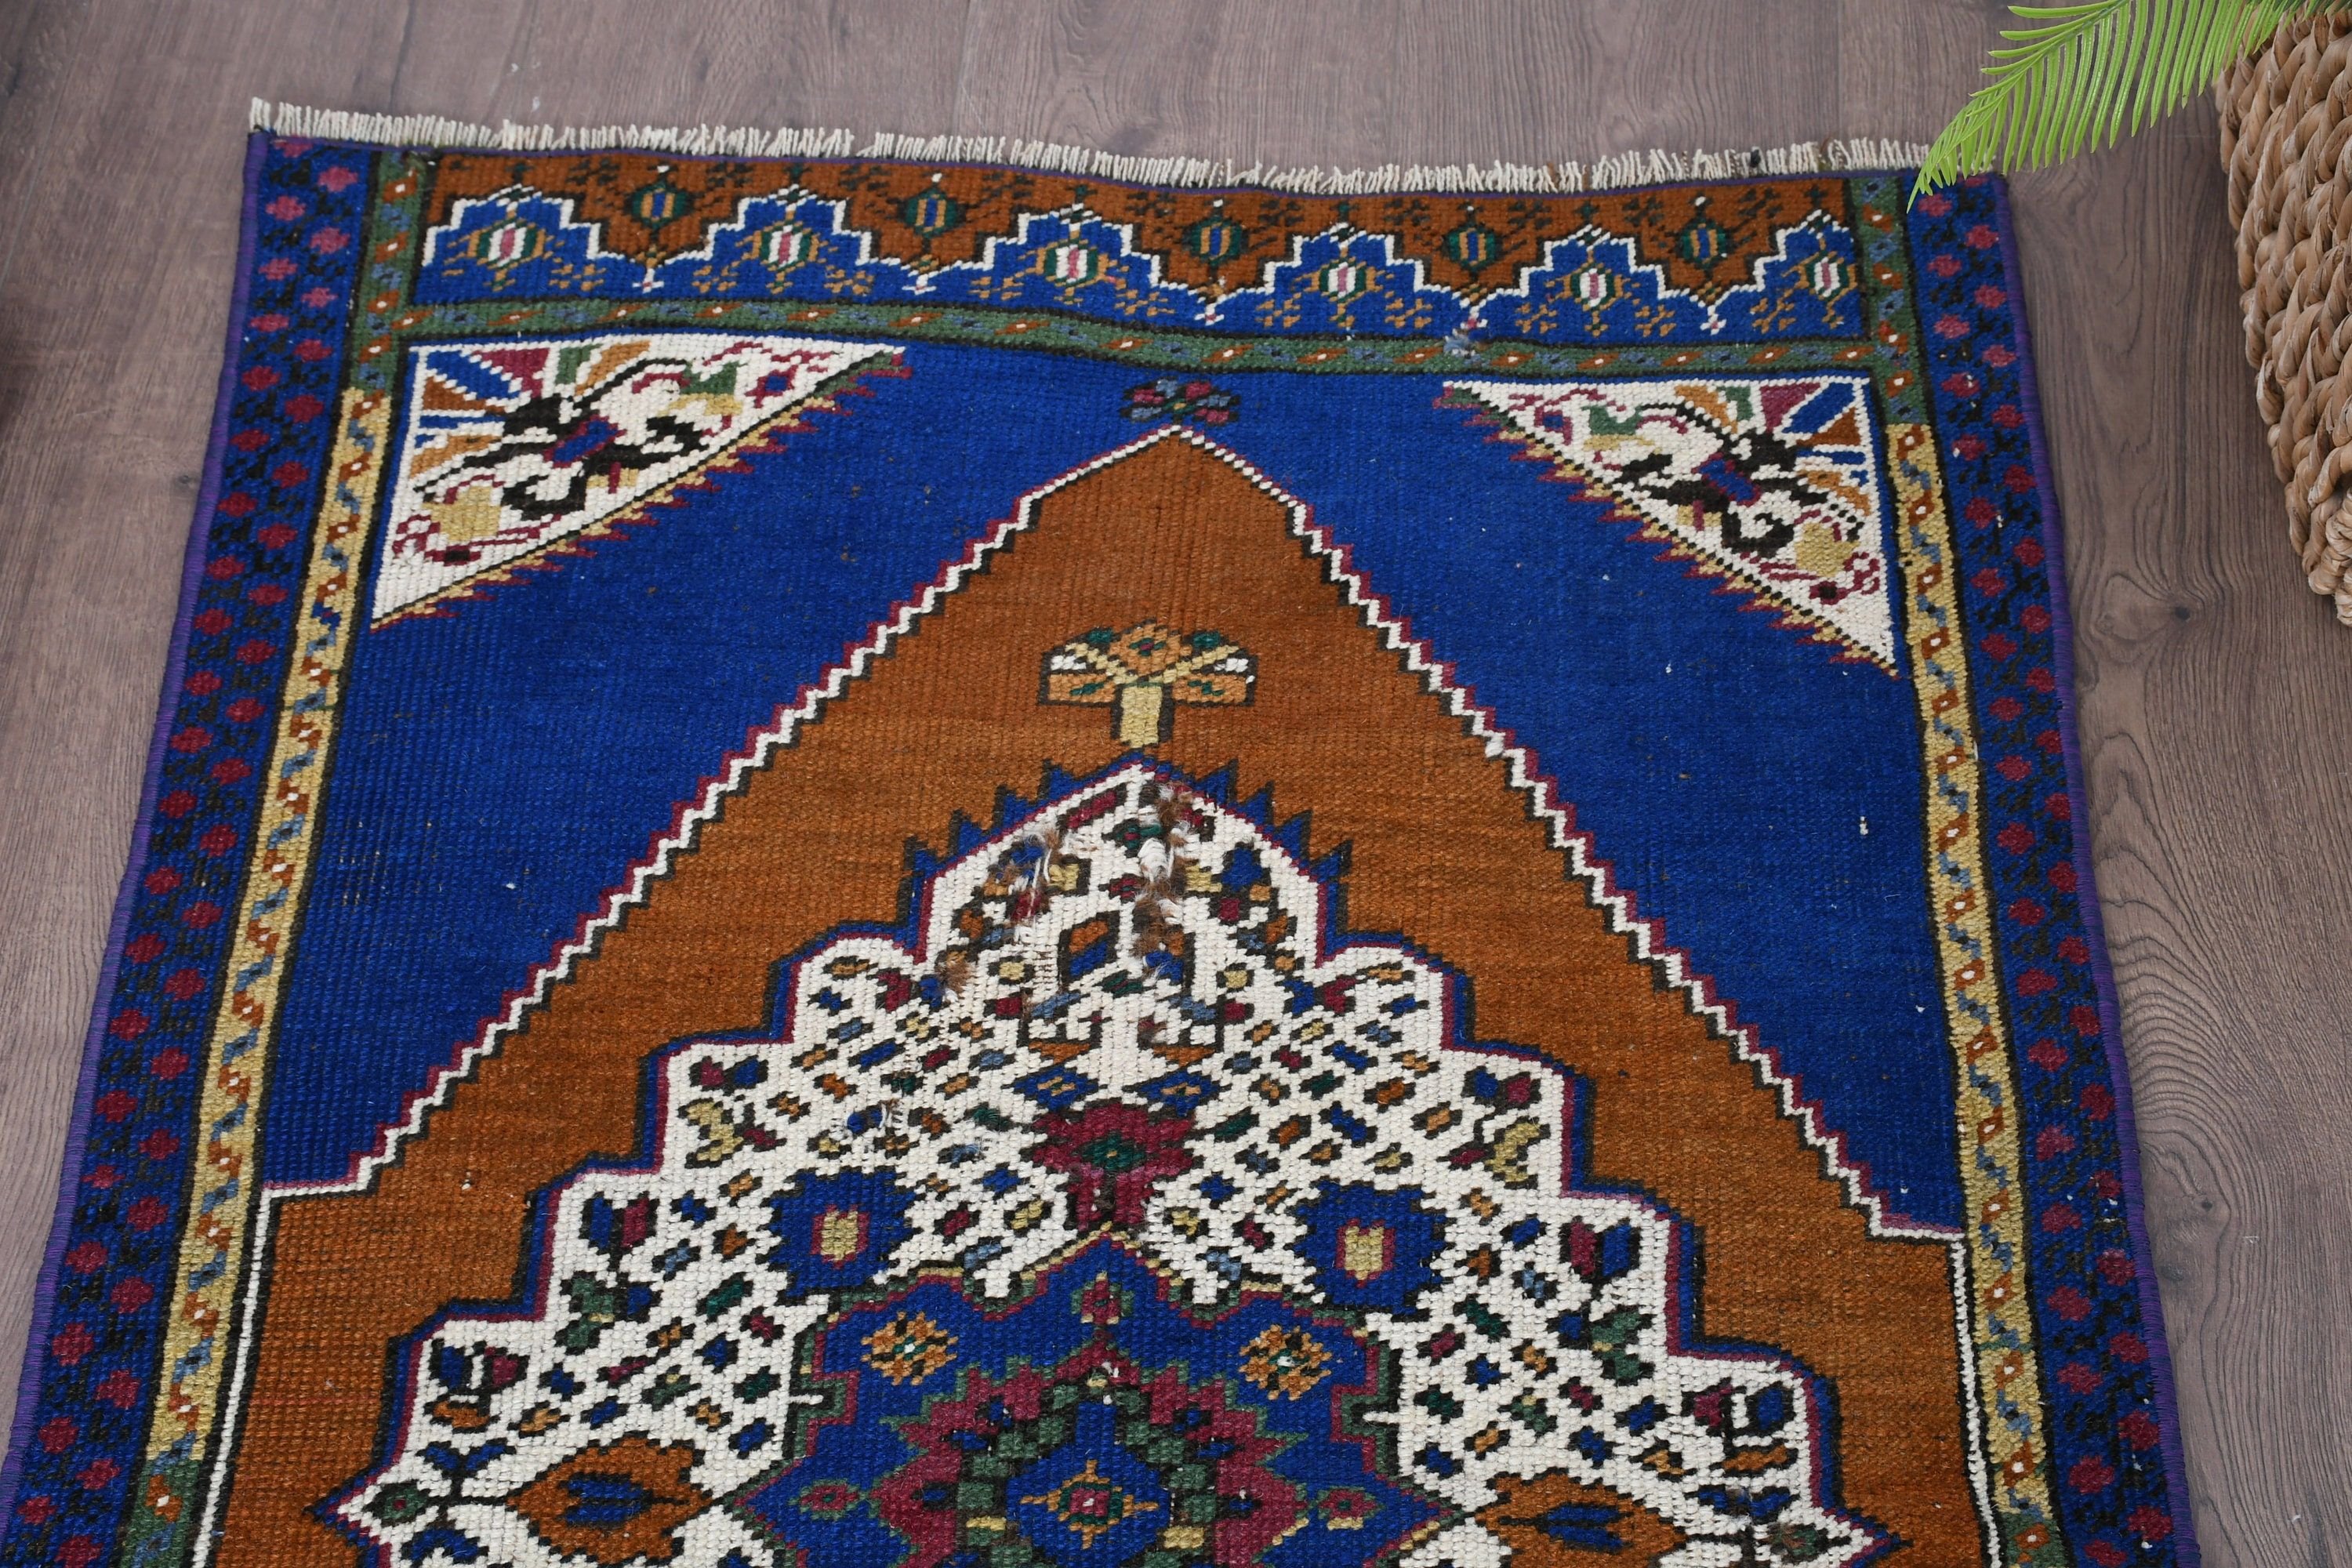 Vintage Rug, 2.4x3.9 ft Small Rug, Blue Floor Rug, Moroccan Rugs, Turkish Rug, Oriental Rug, Rugs for Entry, Door Mat Rugs, Bathroom Rugs